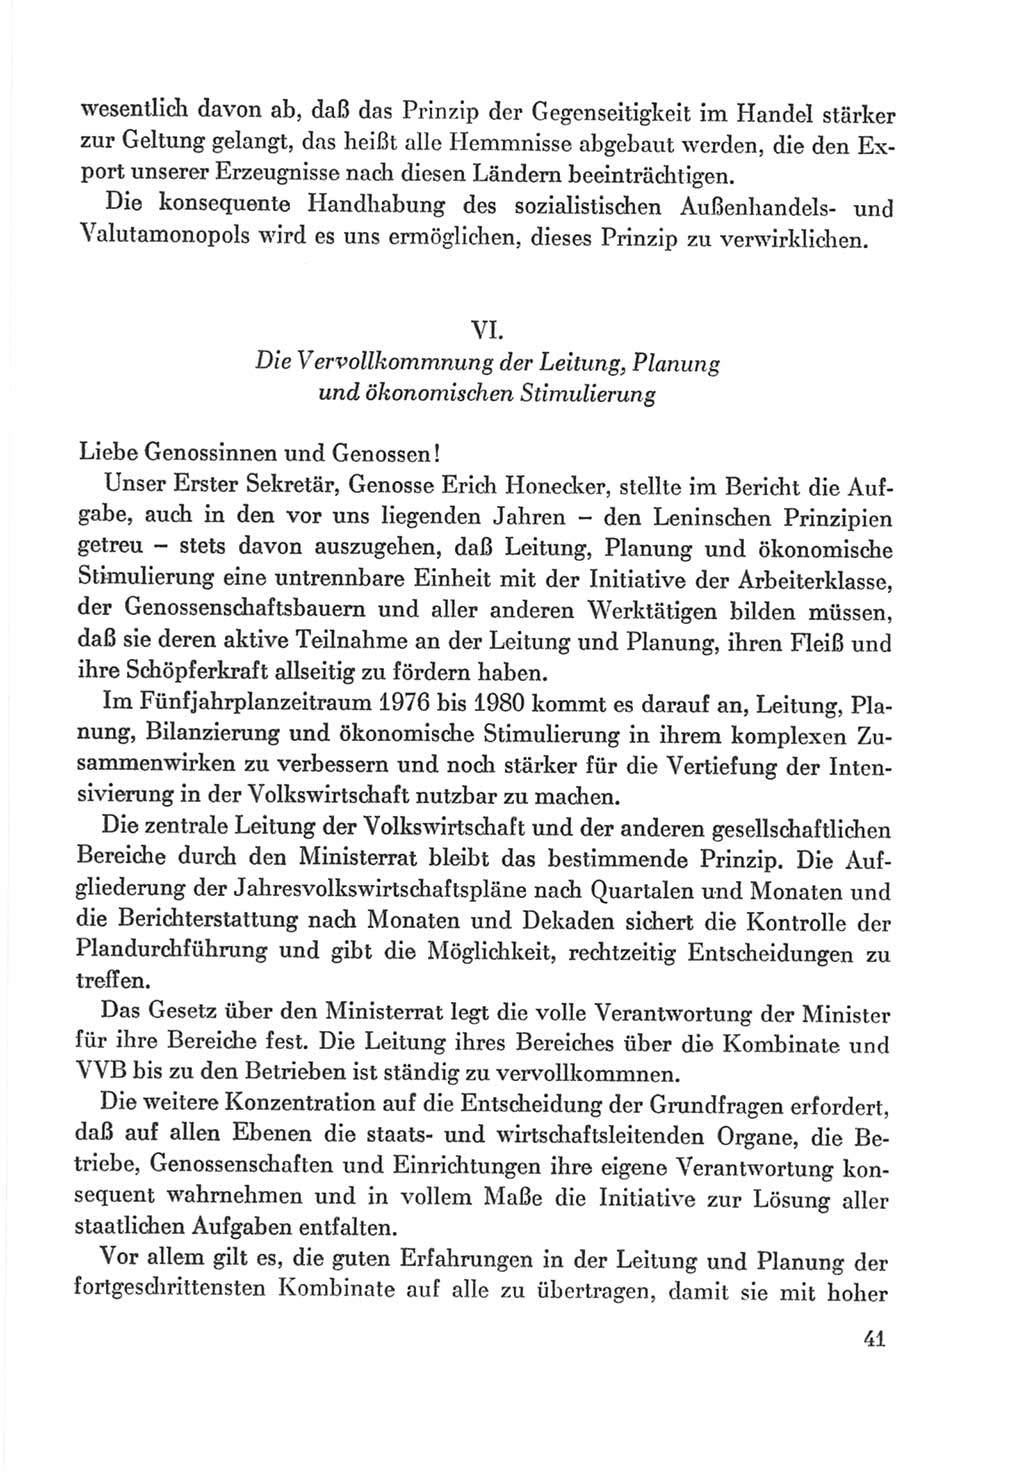 Protokoll der Verhandlungen des Ⅸ. Parteitages der Sozialistischen Einheitspartei Deutschlands (SED) [Deutsche Demokratische Republik (DDR)] 1976, Band 2, Seite 41 (Prot. Verh. Ⅸ. PT SED DDR 1976, Bd. 2, S. 41)